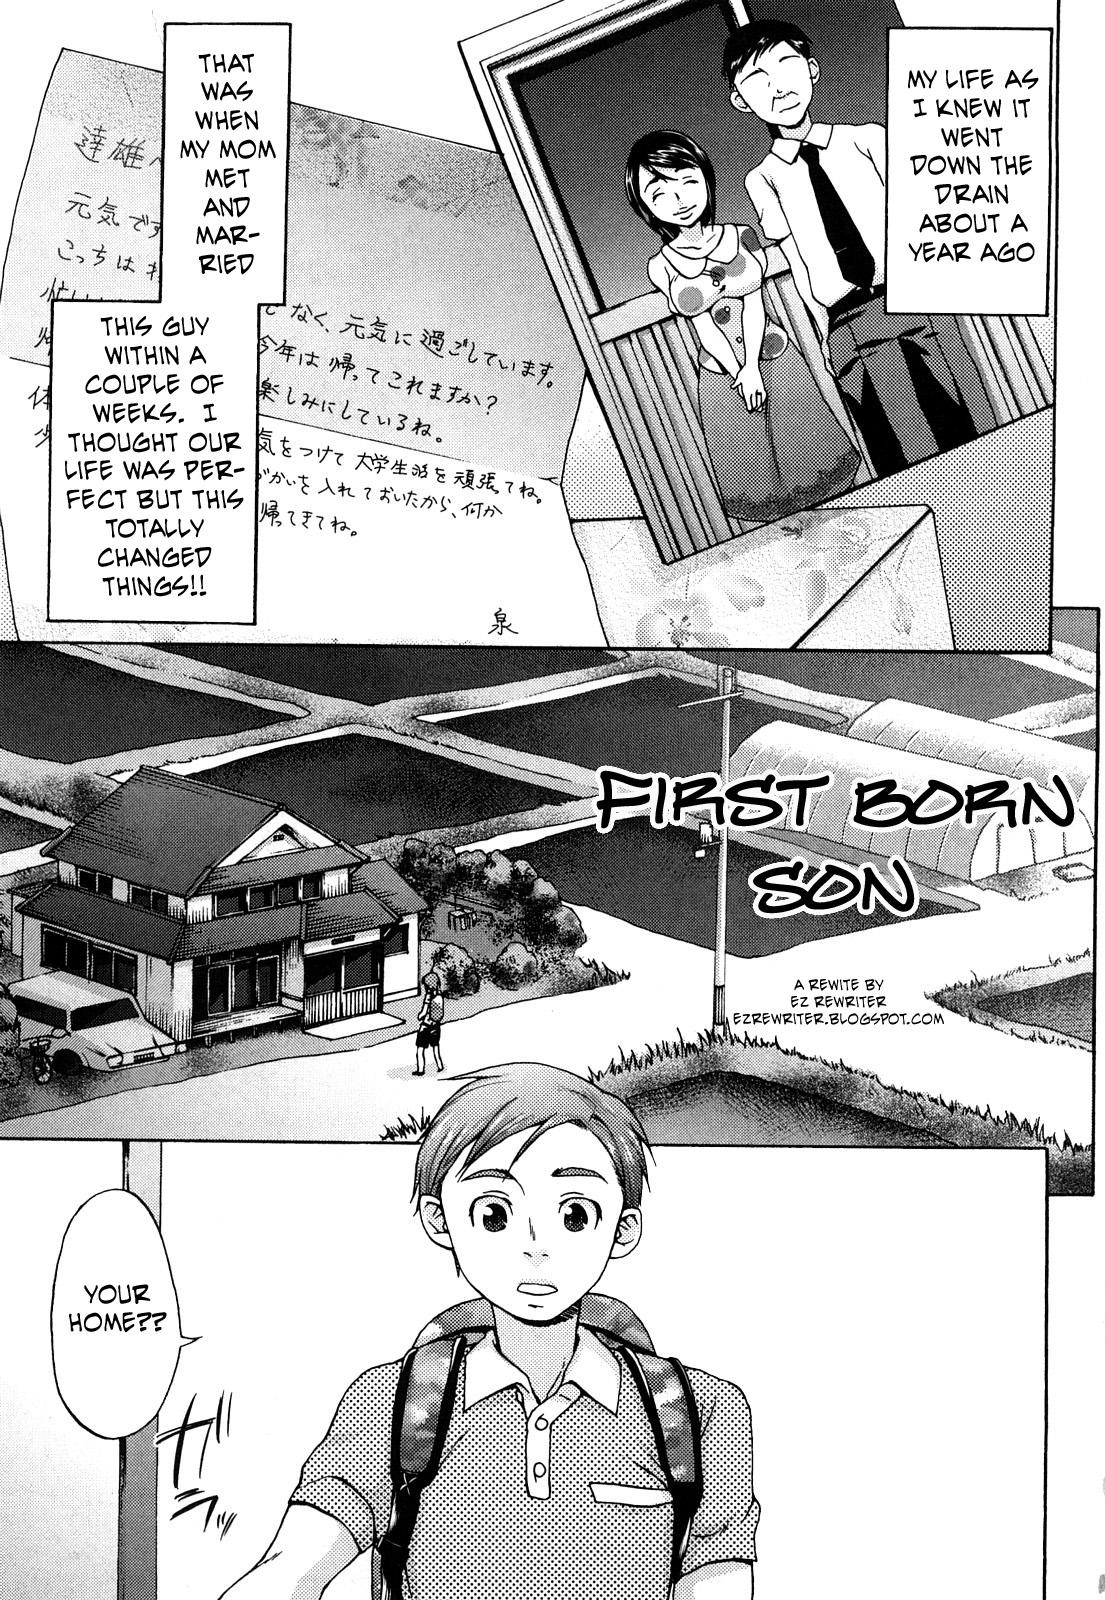 First Born Son 0